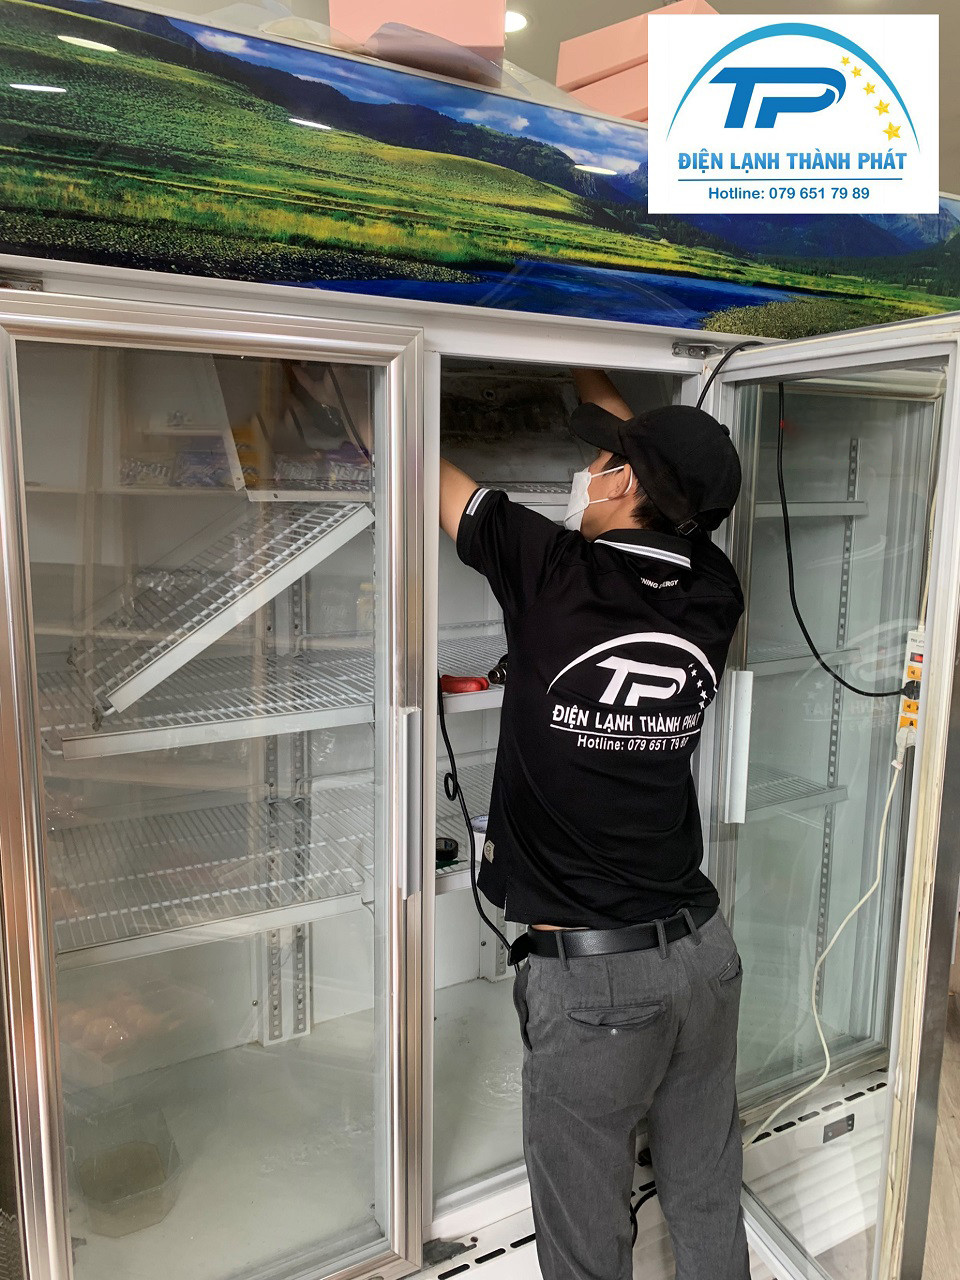 Điện lạnh Thành Phát - Đơn vị cung cấp dịch vụ sửa tủ mát chất lượng tốt nhất.